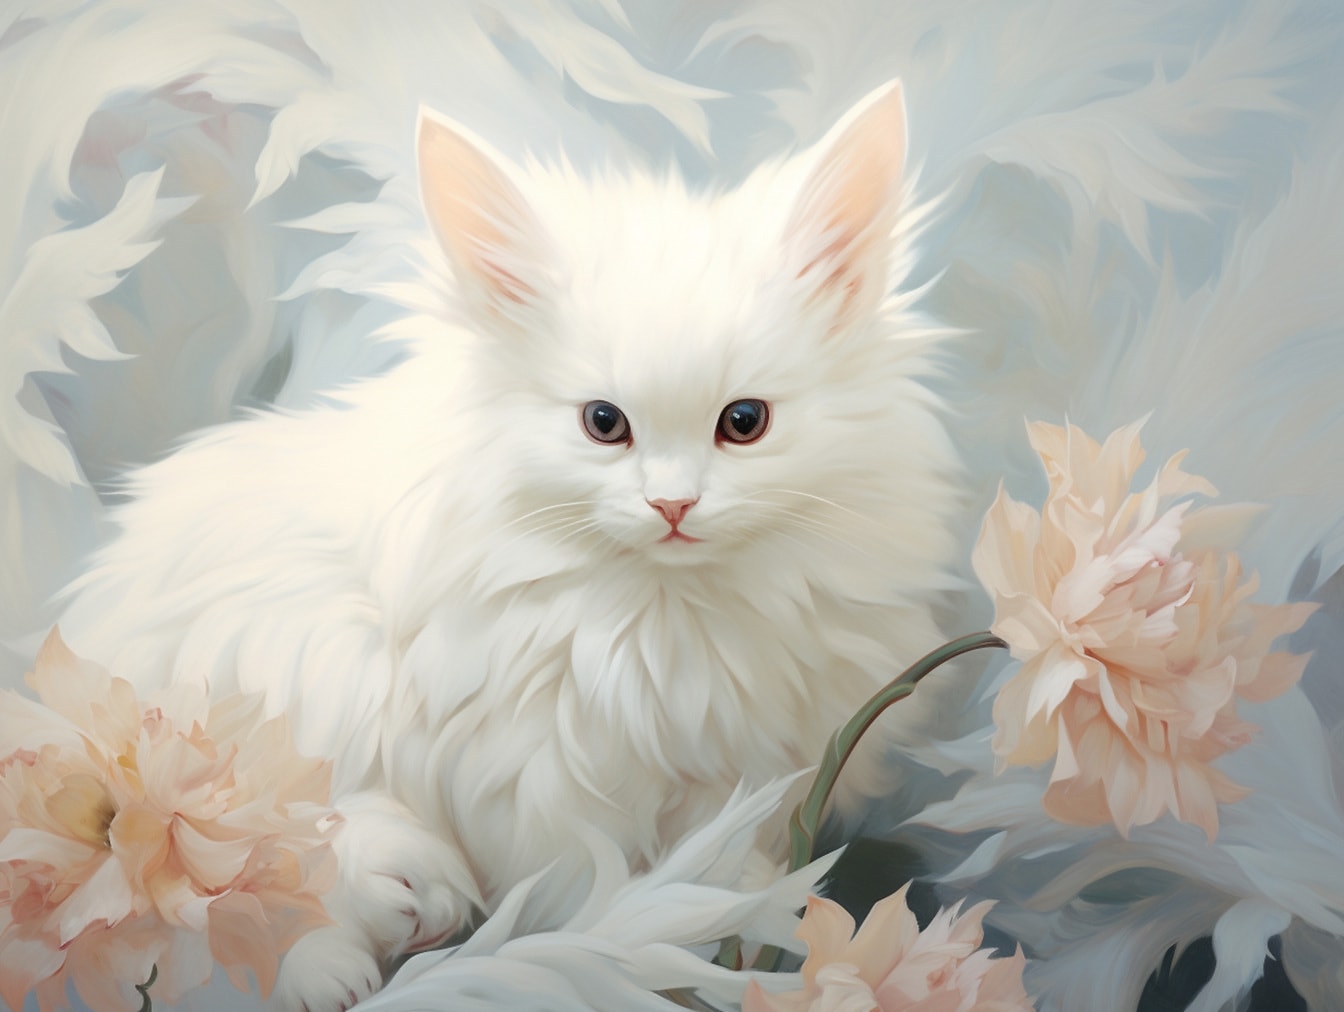 De stijlillustratie van de waterverf van harig wit katje